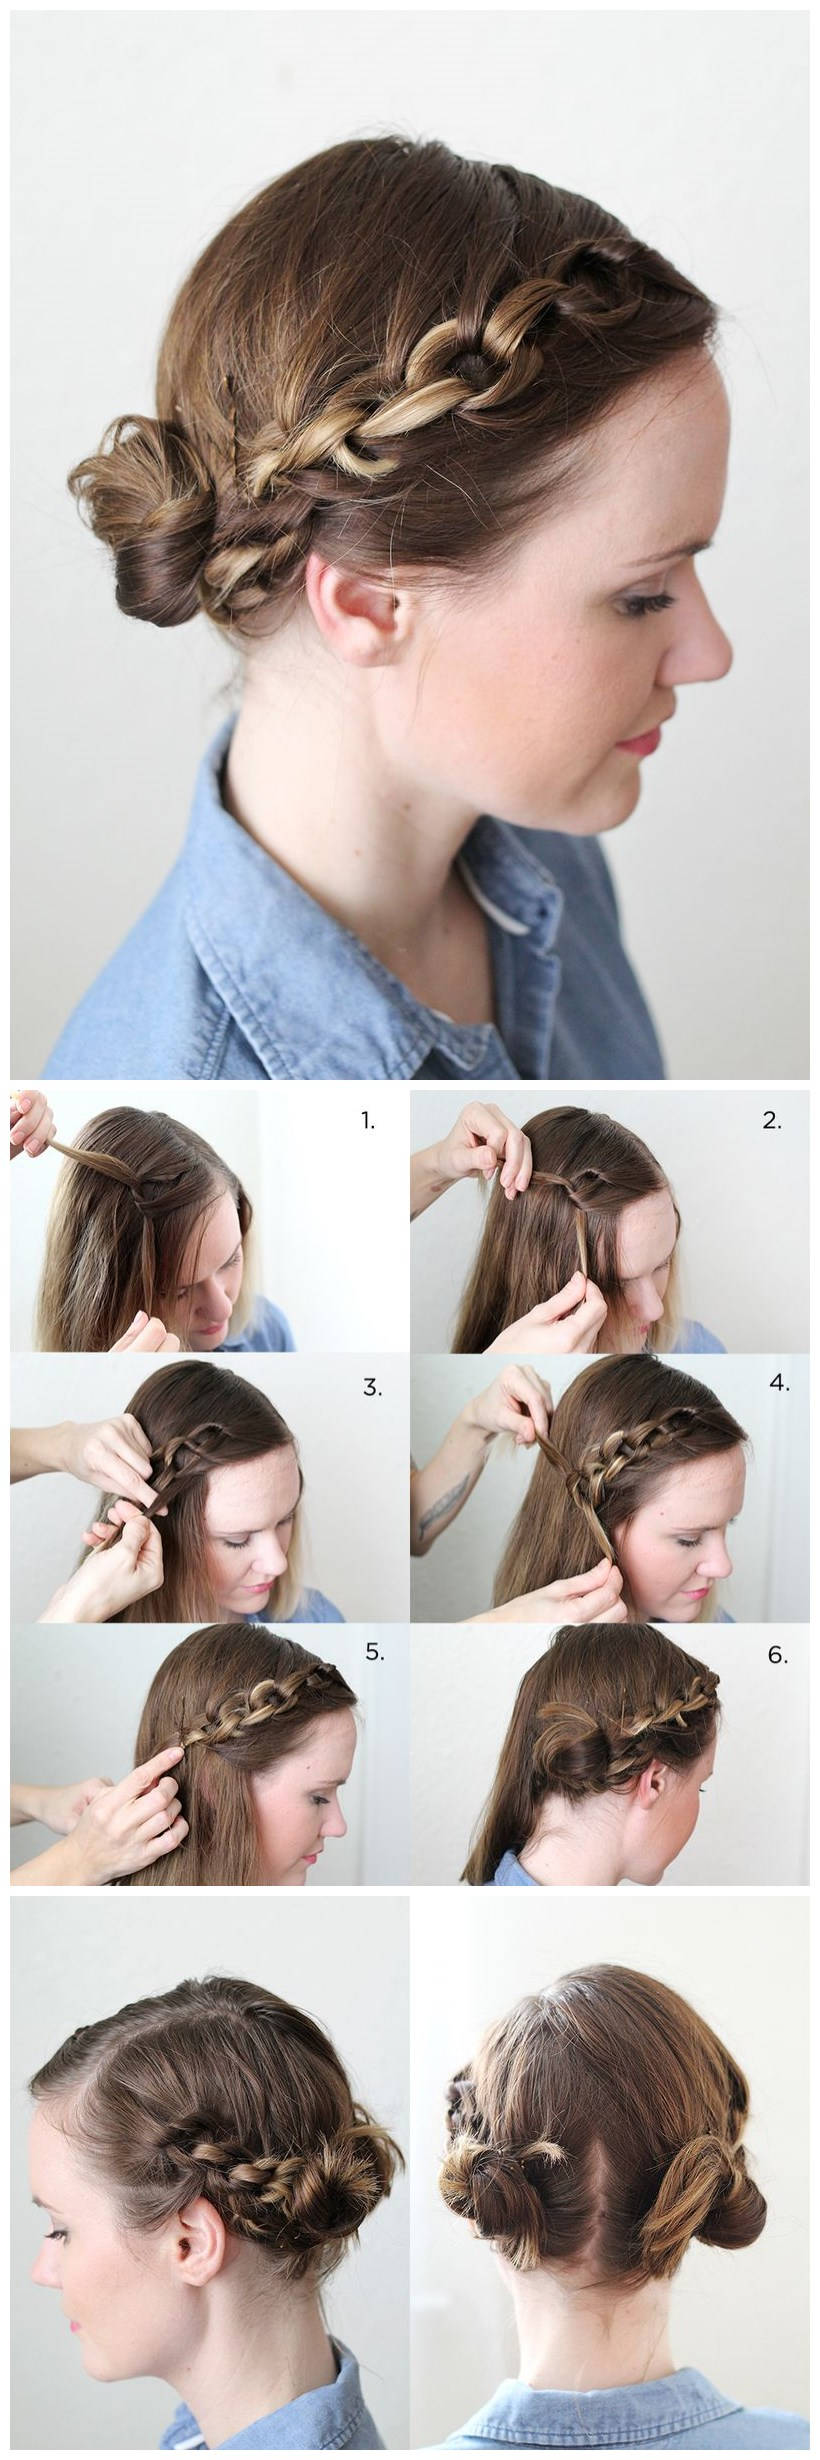 Hair Tutorial: How to do A Cute Chain Braid